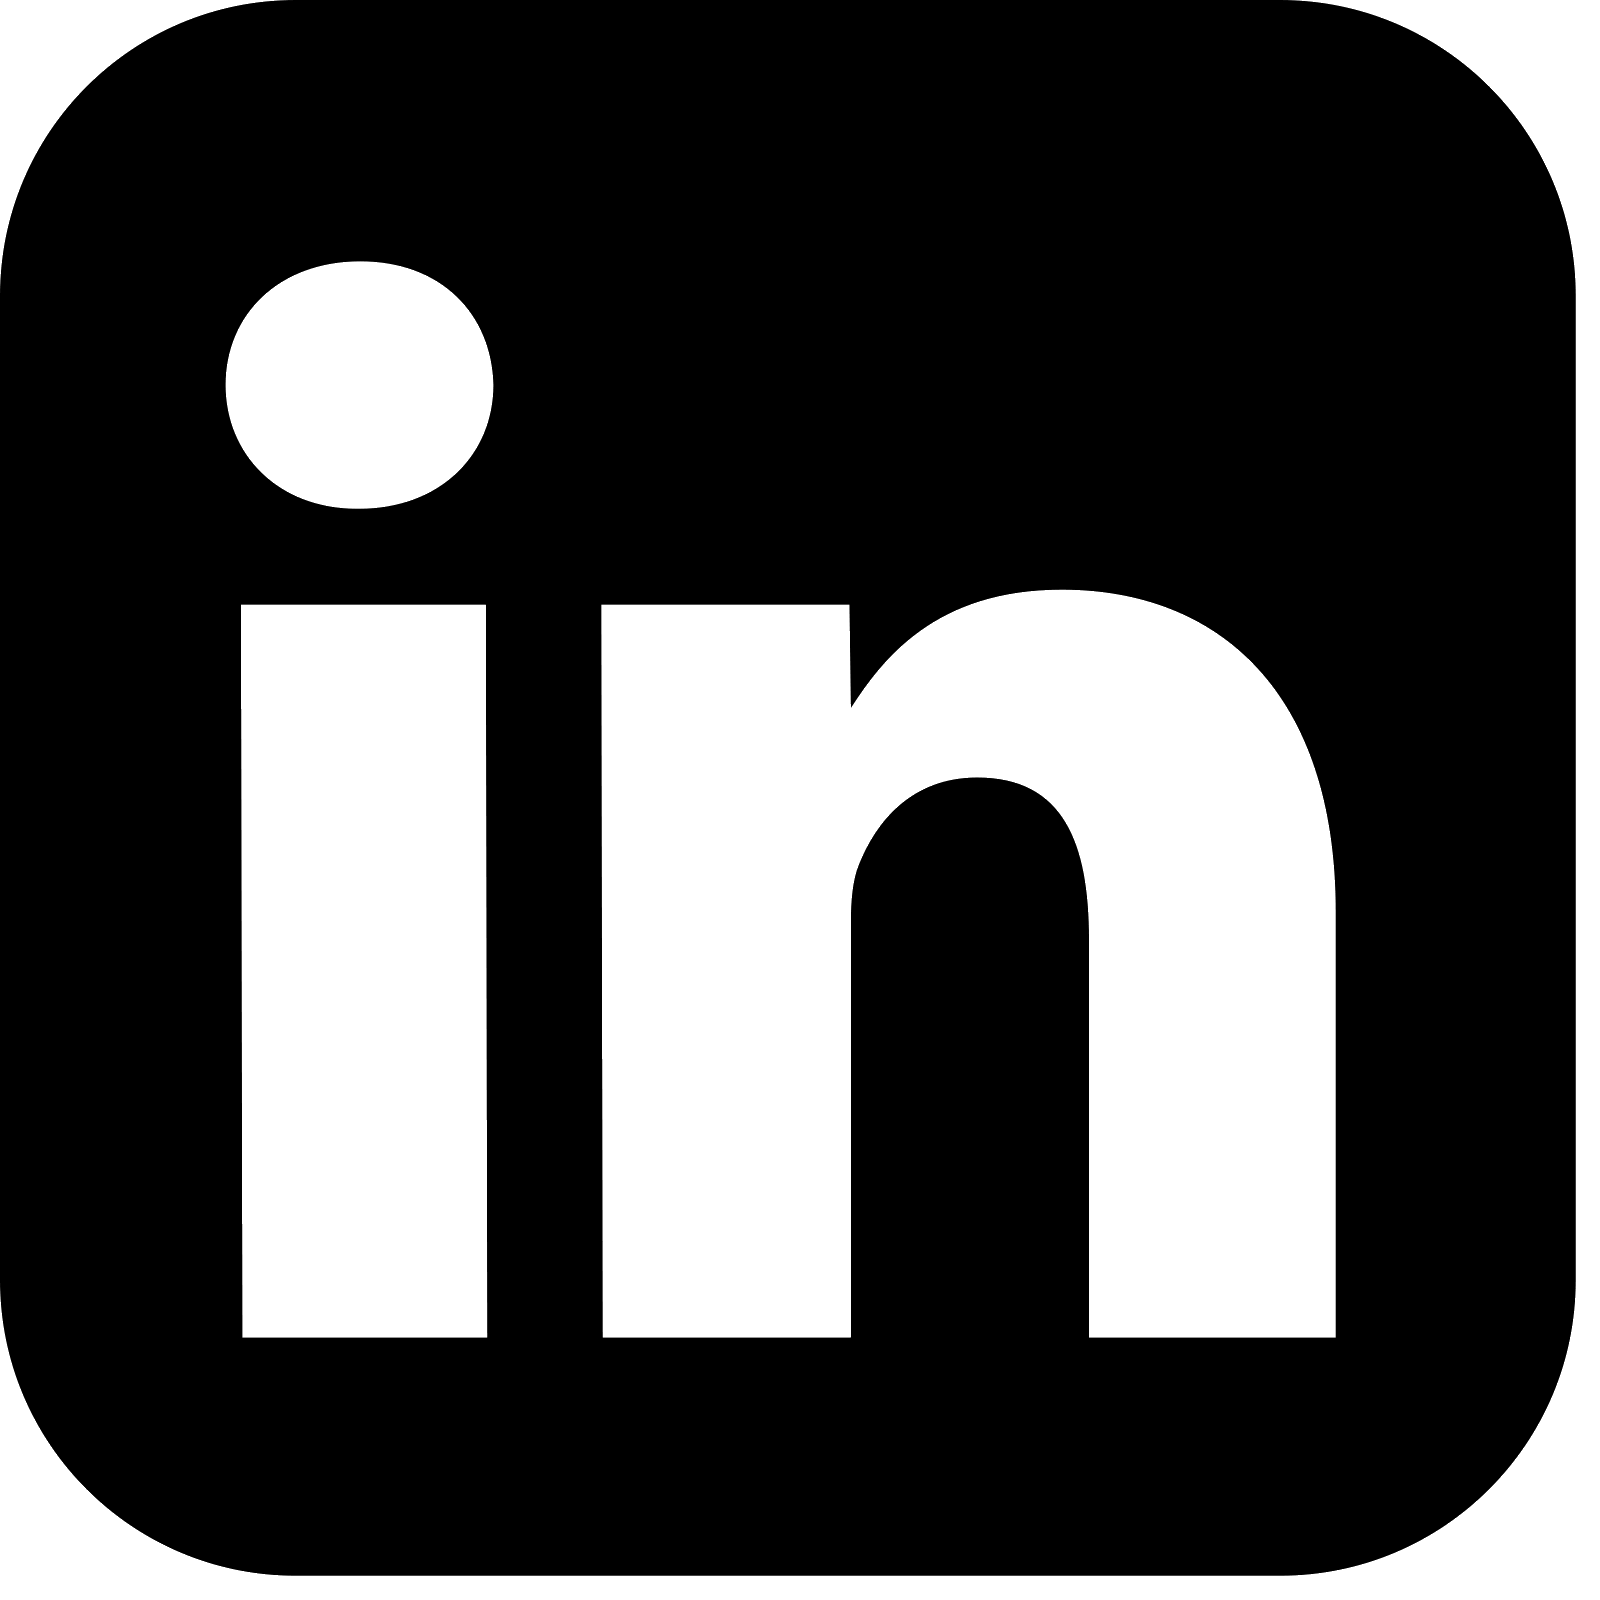 new-linkedin-logo-white-black-png-1